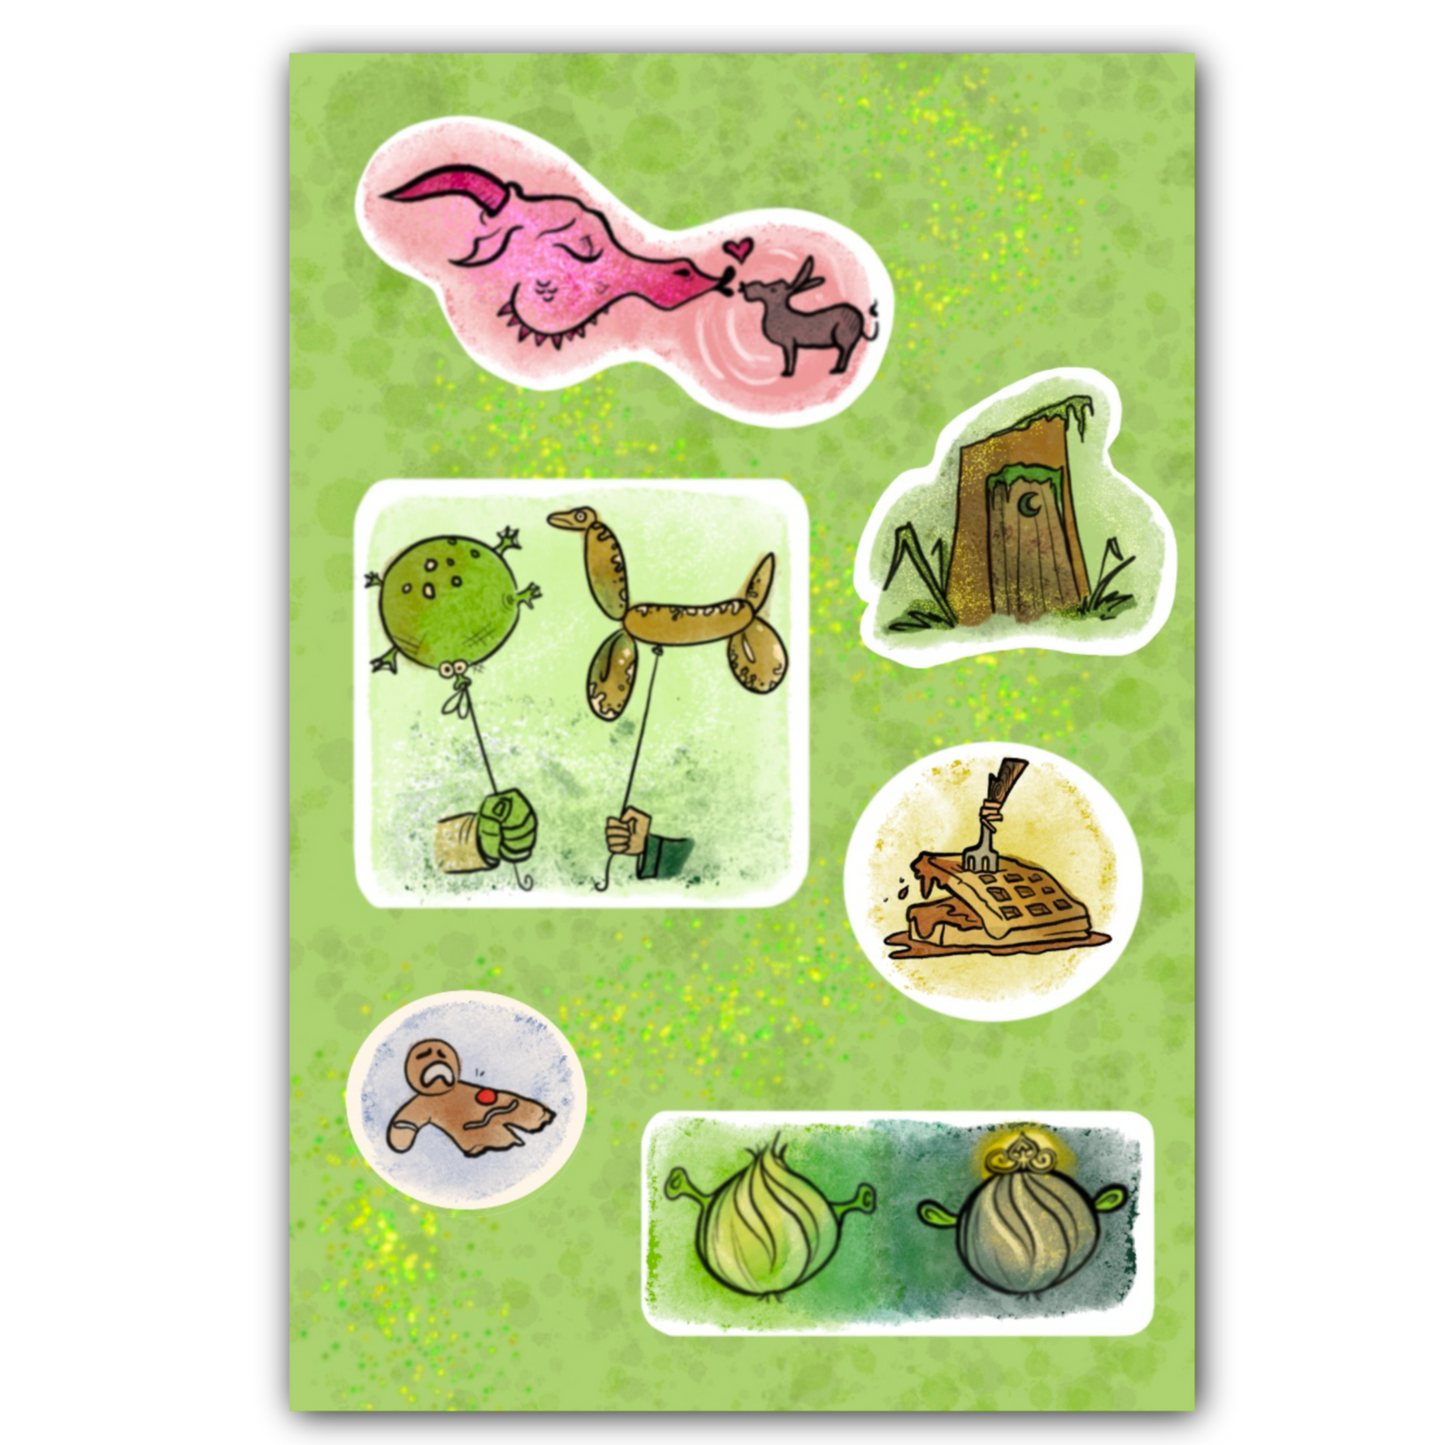 Shrek Inspired-Sticker Sheet